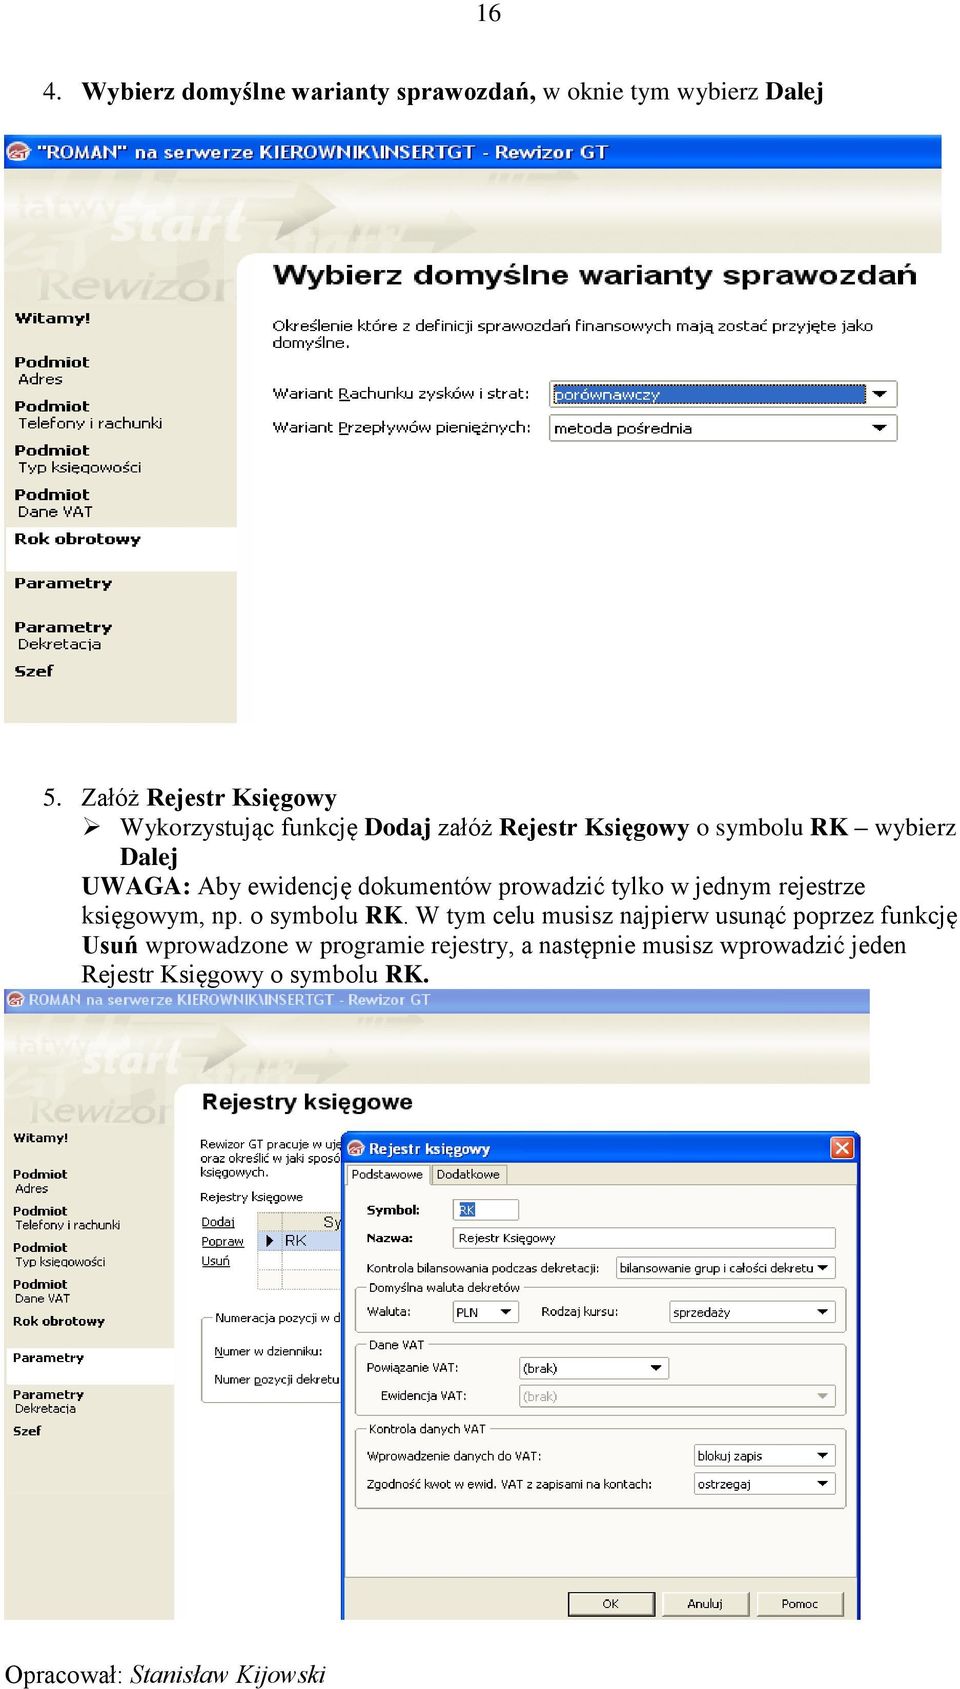 UWAGA: Aby ewidencję dokumentów prowadzić tylko w jednym rejestrze księgowym, np. o symbolu RK.